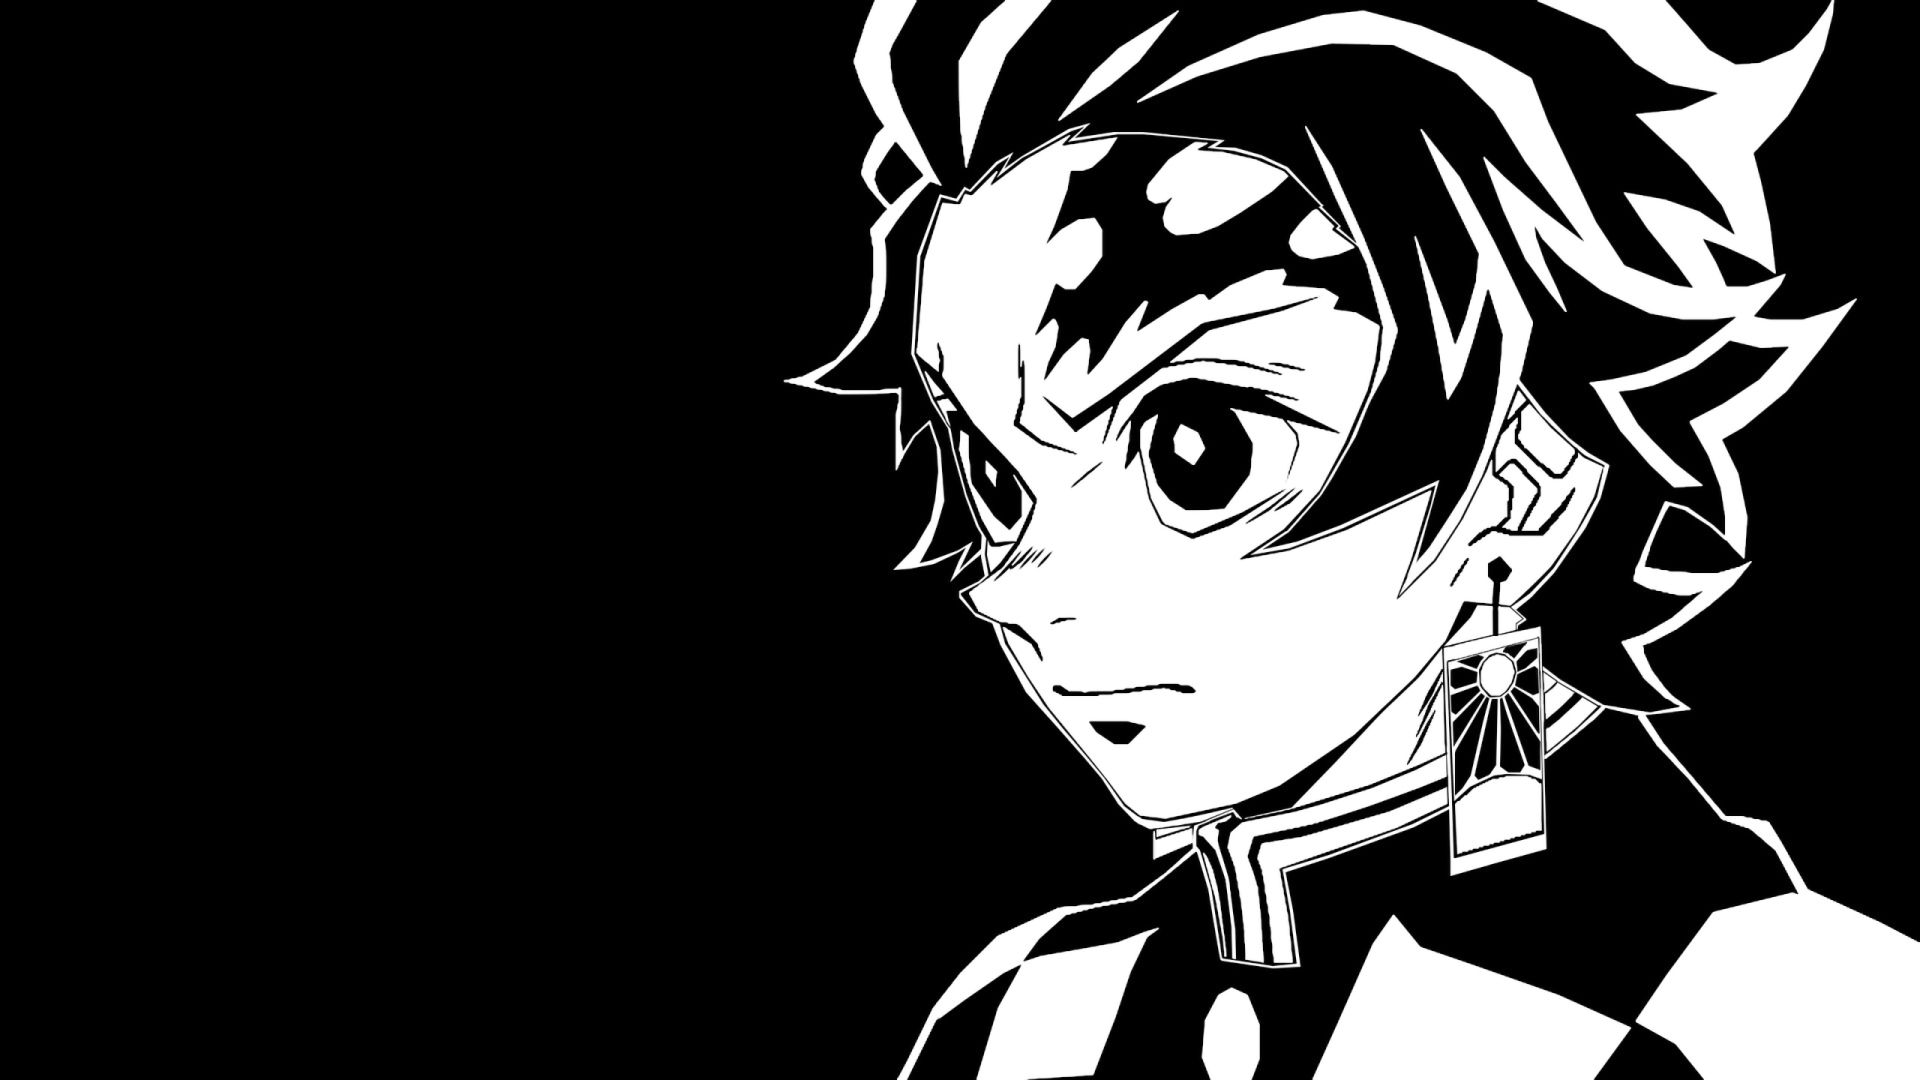 Ảnh avatar Anime trắng đen siêu chất